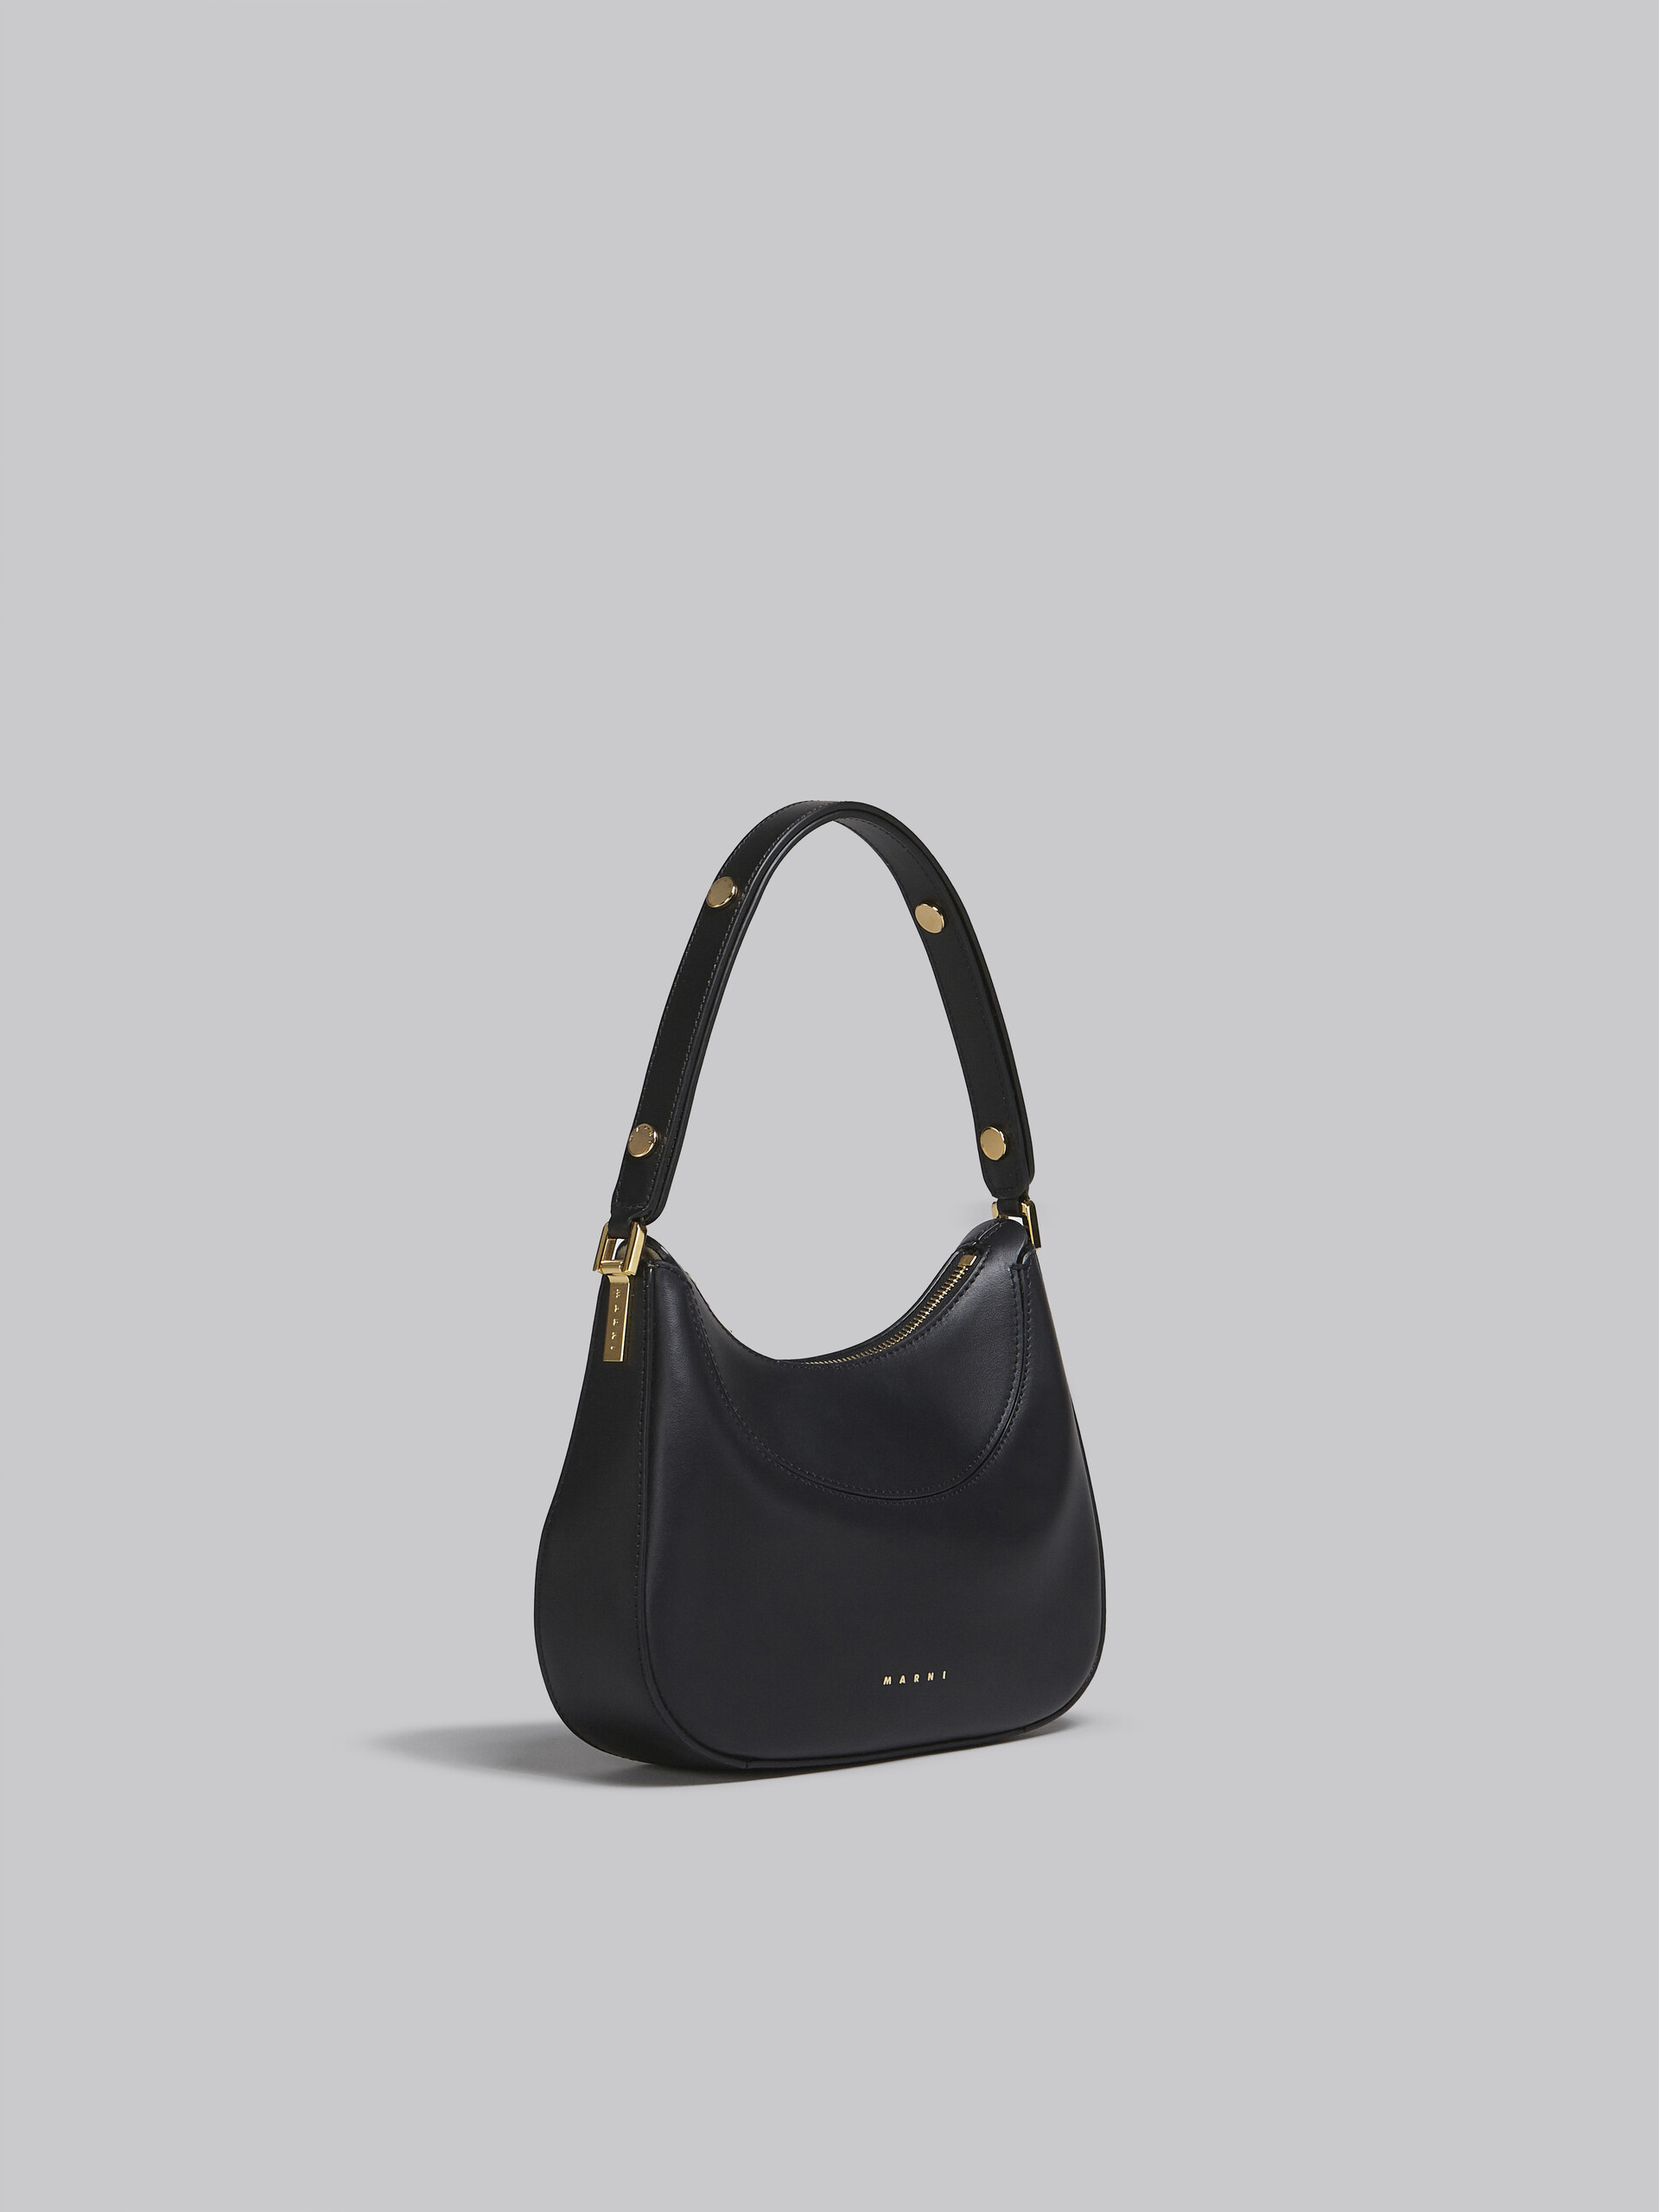 Milano mini bag in black leather - Handbag - Image 6